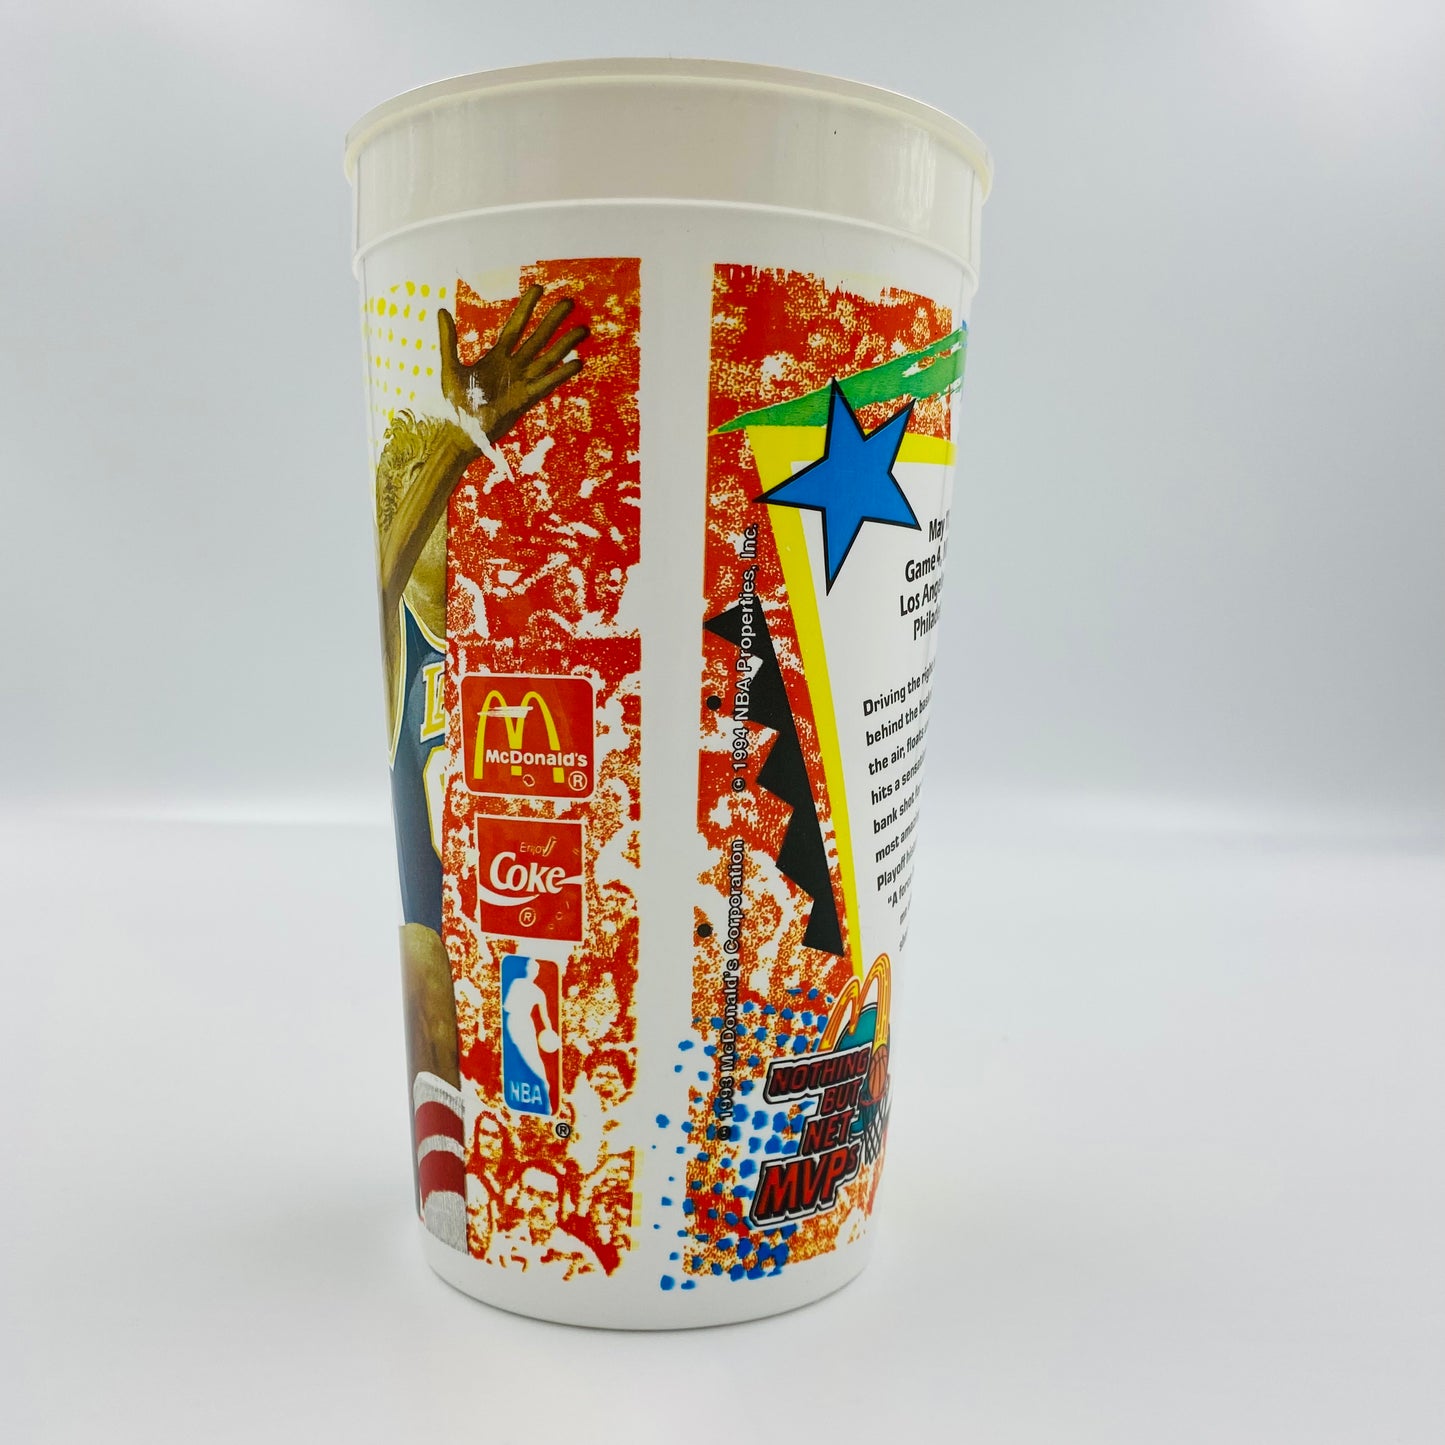 NBA Nothing But Net MVP’s Julius “DR. J” Erving 32oz plastic cup (1994) McDonald's